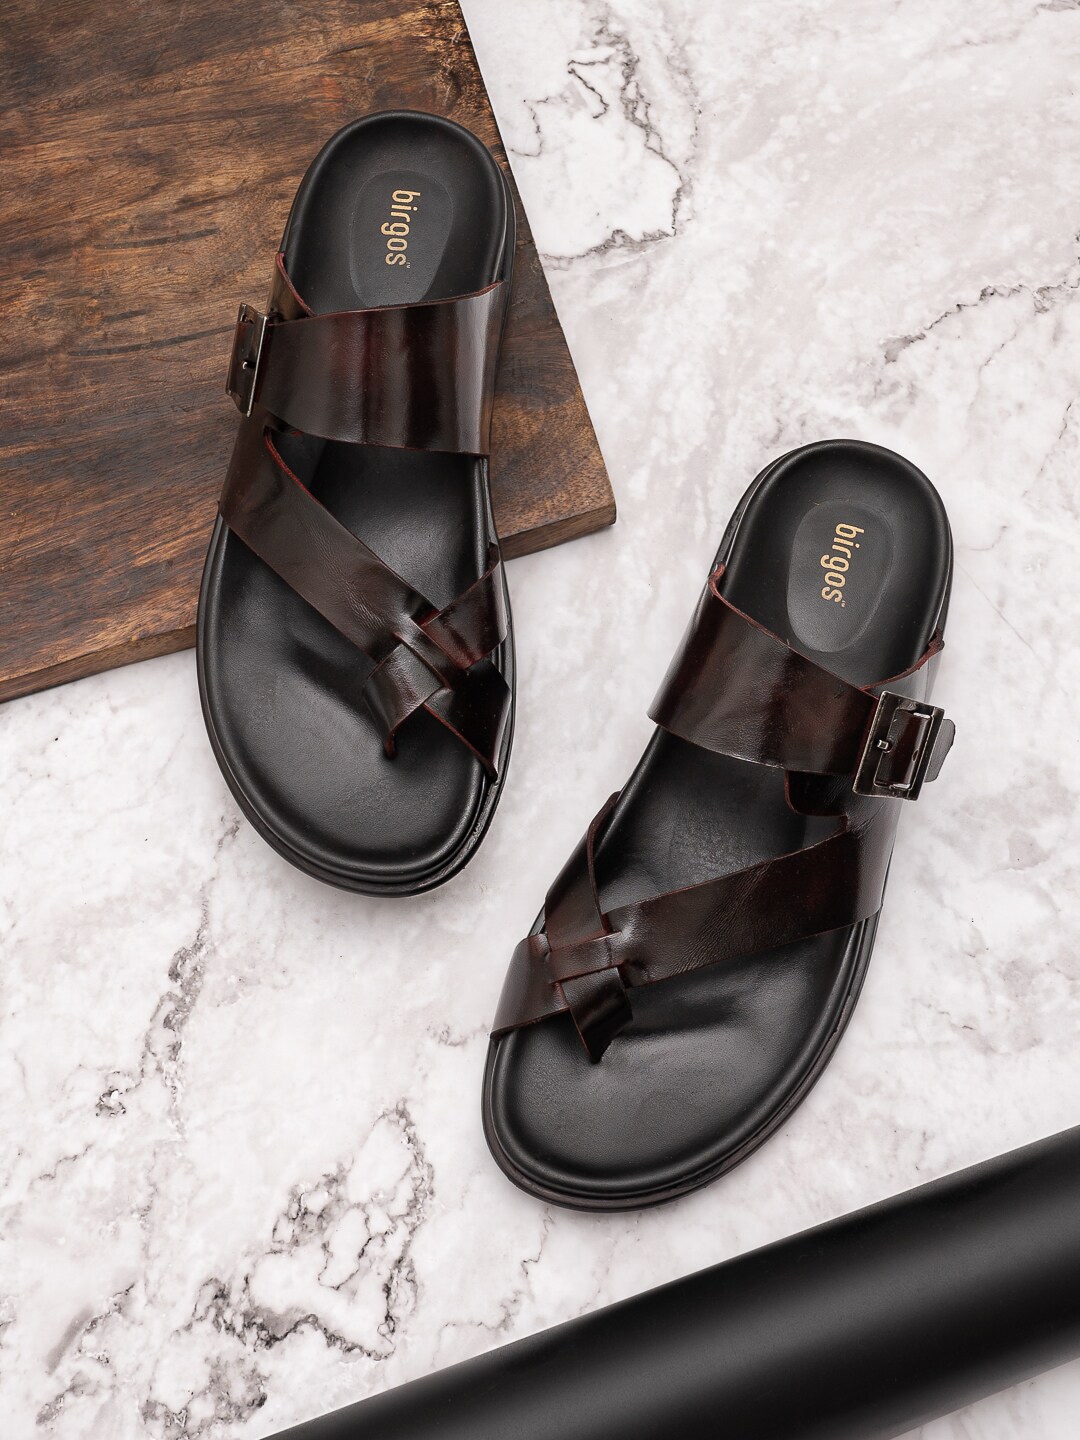 birgos Men Textured Comfort Sandals